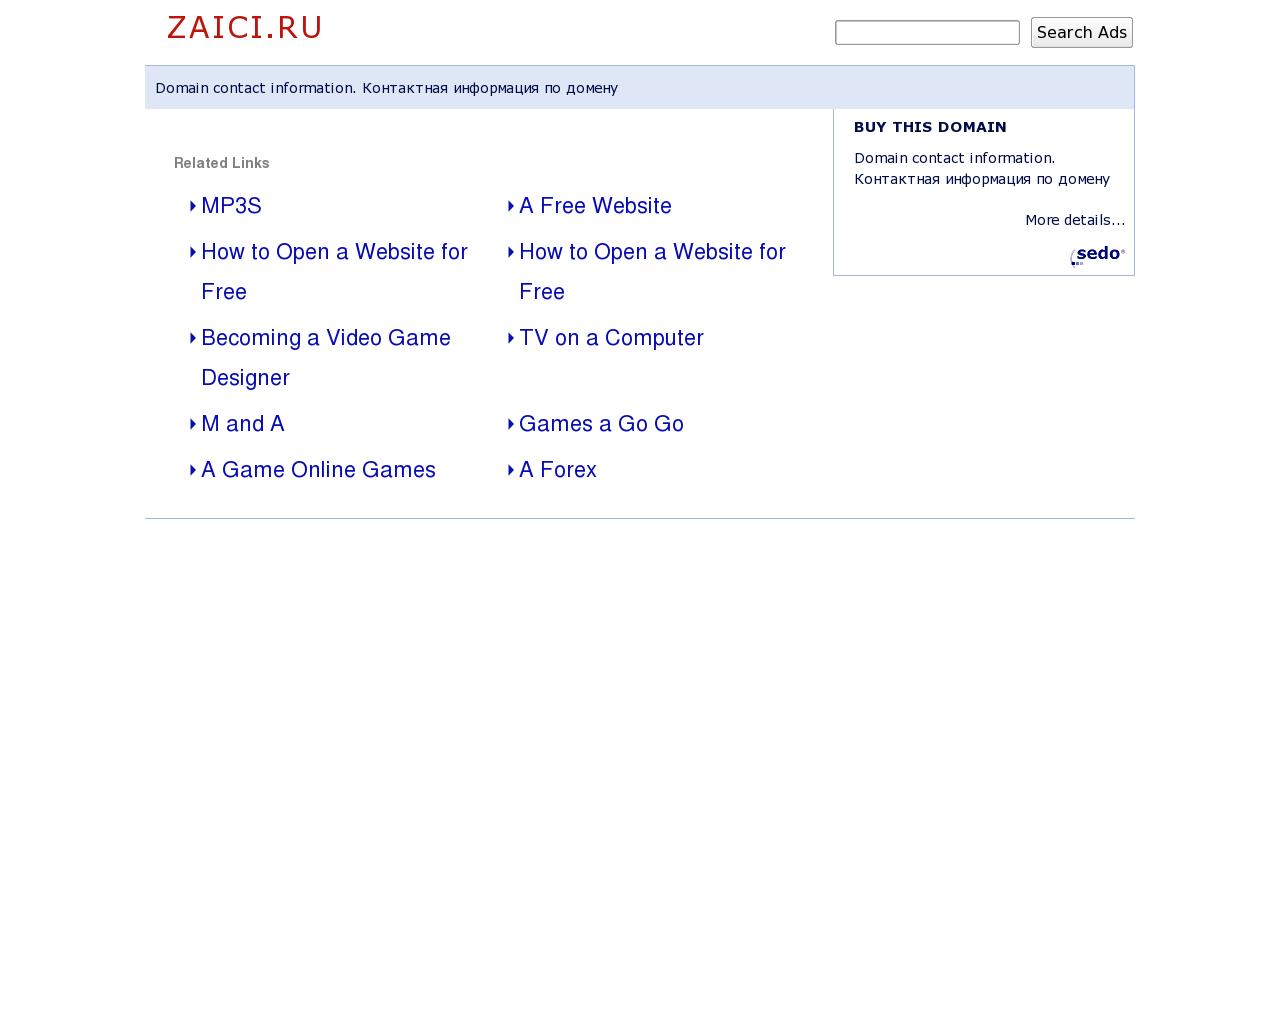 Изображение сайта zaici.ru в разрешении 1280x1024